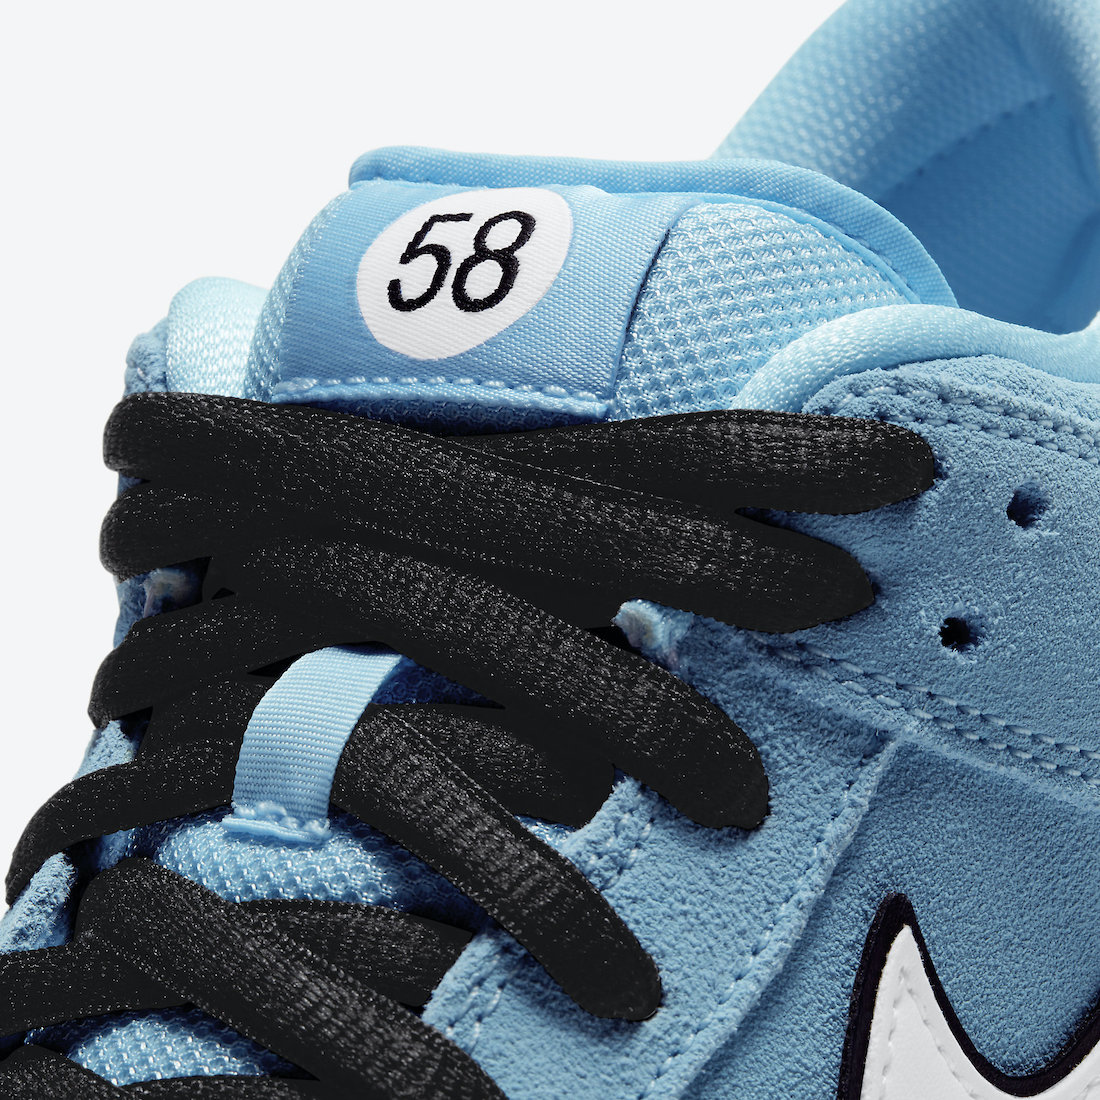 Nike SB Dunk Low Gulf BQ6817-401 Release Date Price